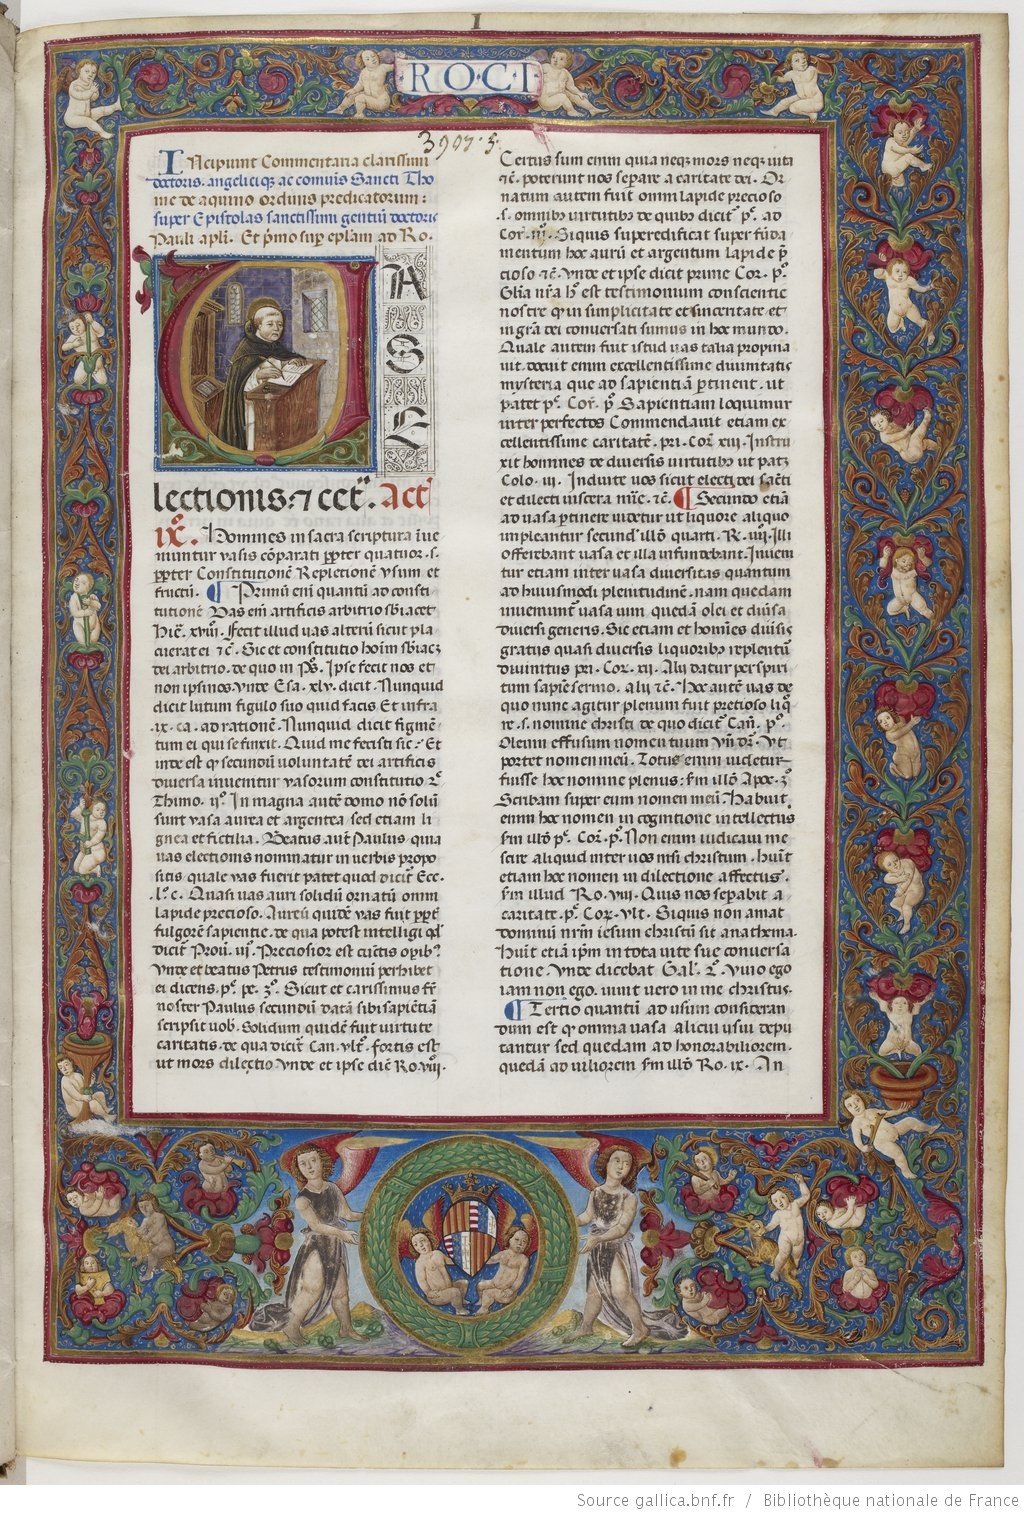 Paris, Bibliothèque nationale de France, MS lat. 674, fol. 1r. Source: http://gallica.bnf.fr/ark:/12148/btv1b8446786z.